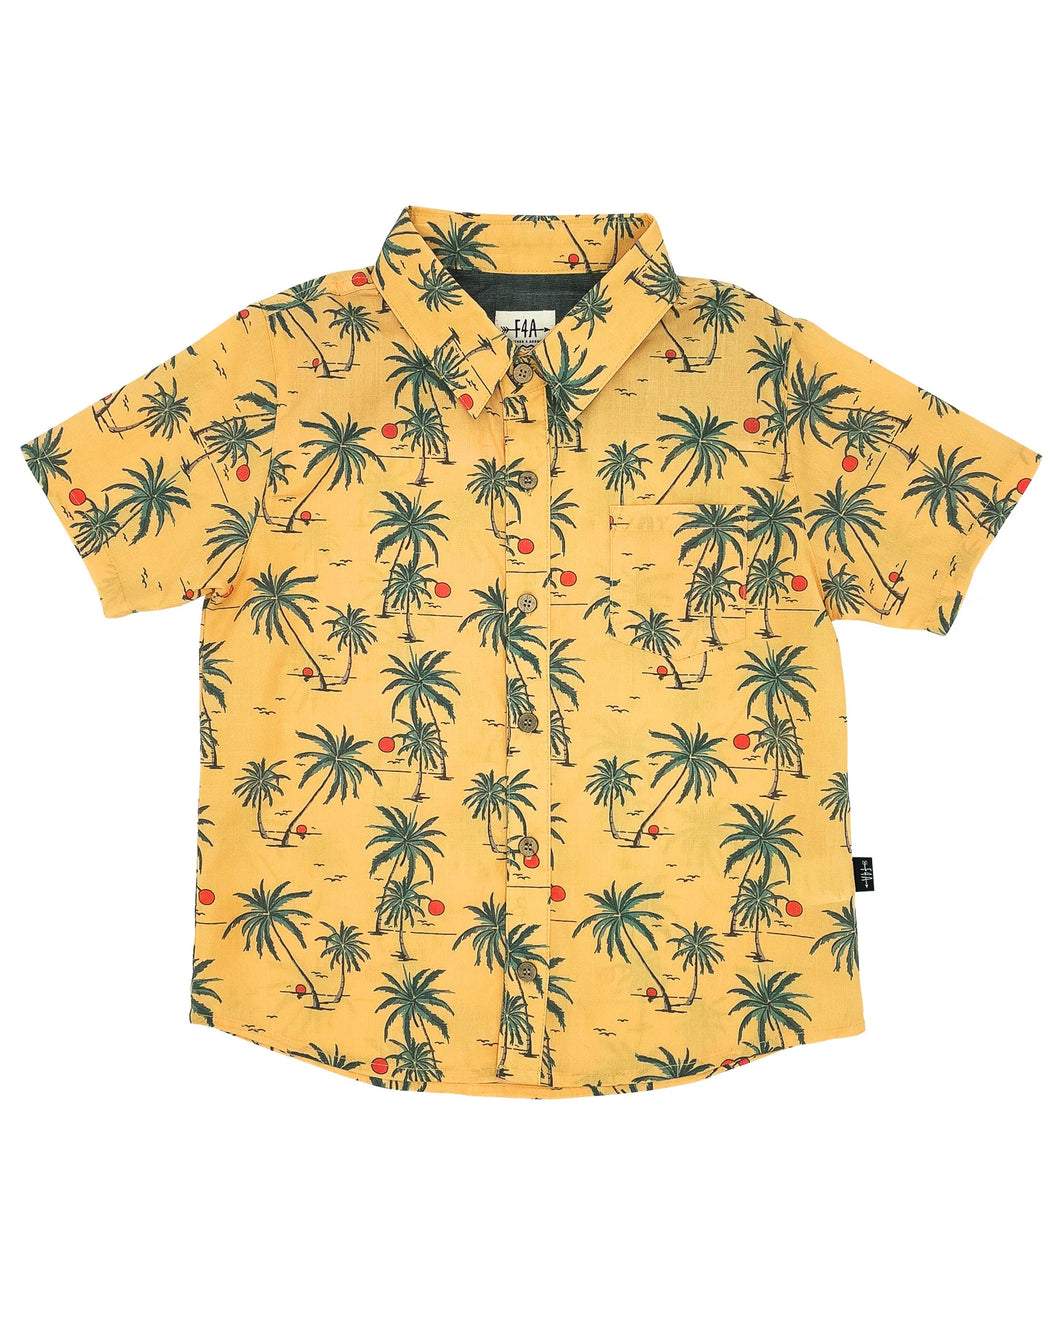 Sunset Tropics Button Down Shirt in Buff Yellow